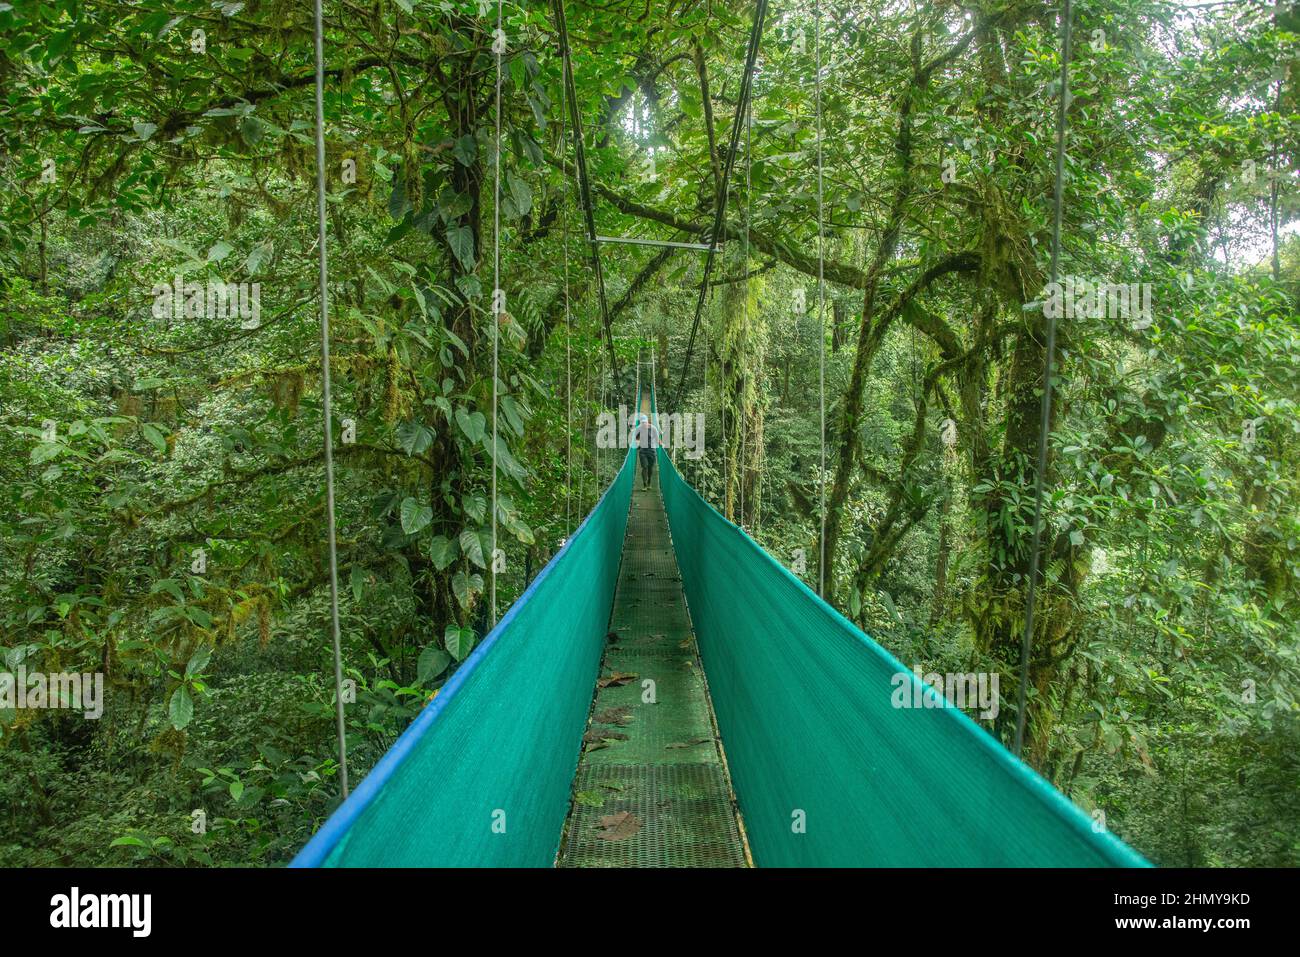 Pont suspendu au-dessus de la forêt nuageuse, Guanacaste, Costa Rica Banque D'Images